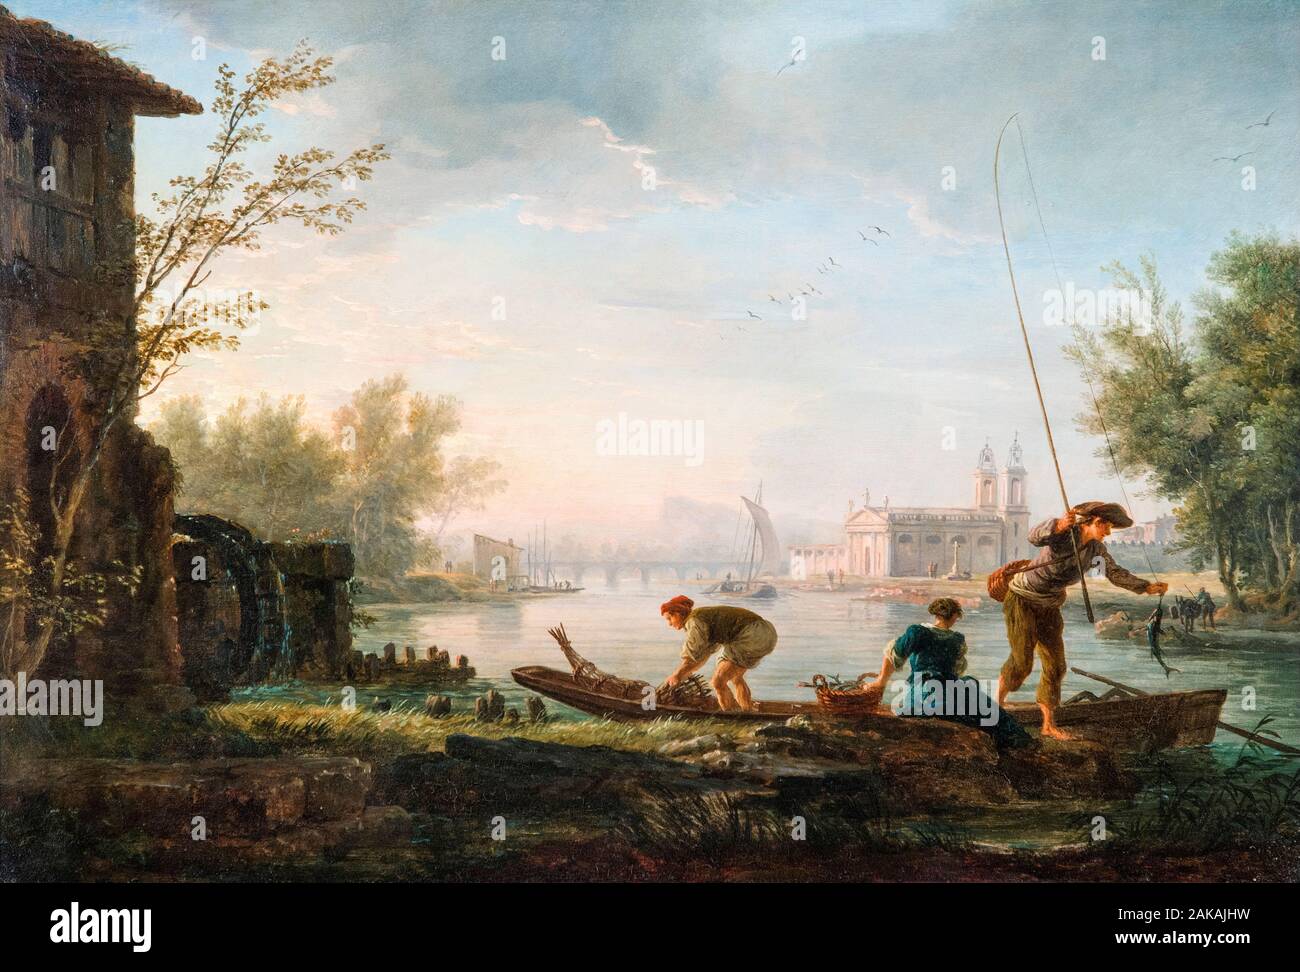 Claude Joseph Vernet, les quatre moments de la journée : matin, peinture de paysage, 1757 Banque D'Images